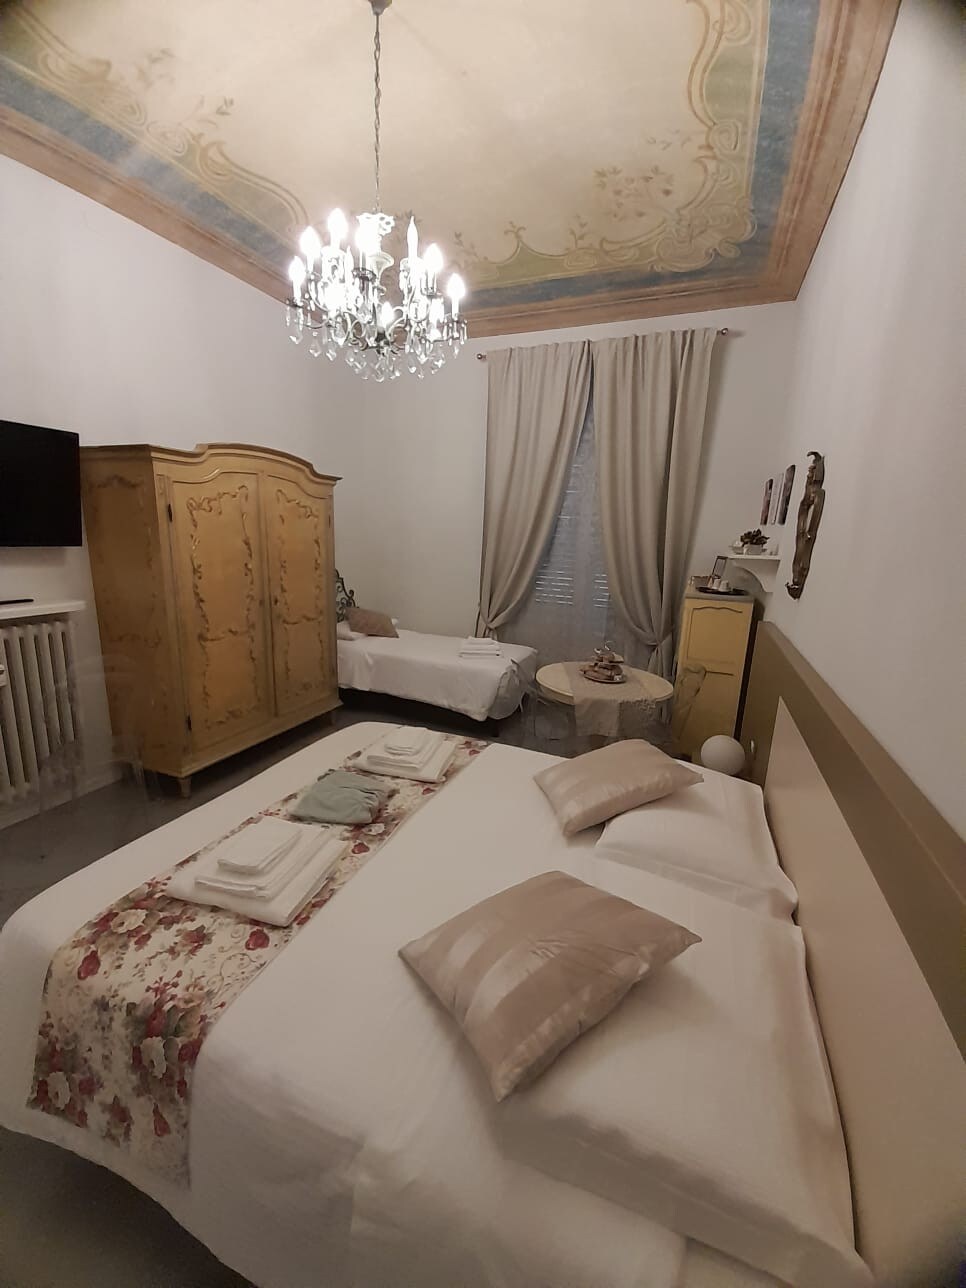 Il Sogno Torino Guesthouse